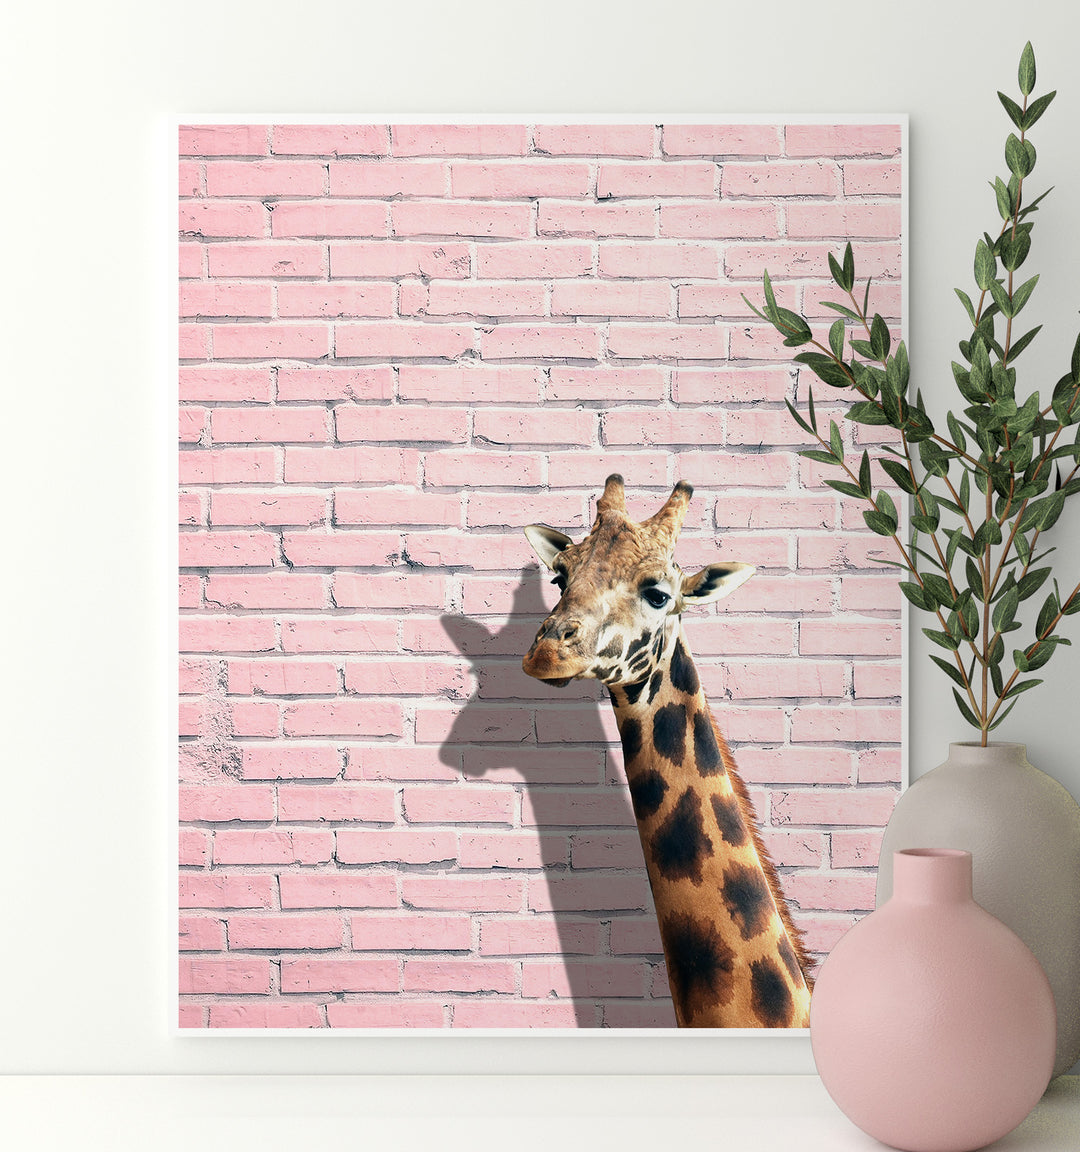 Giraffe on a Pink Wall